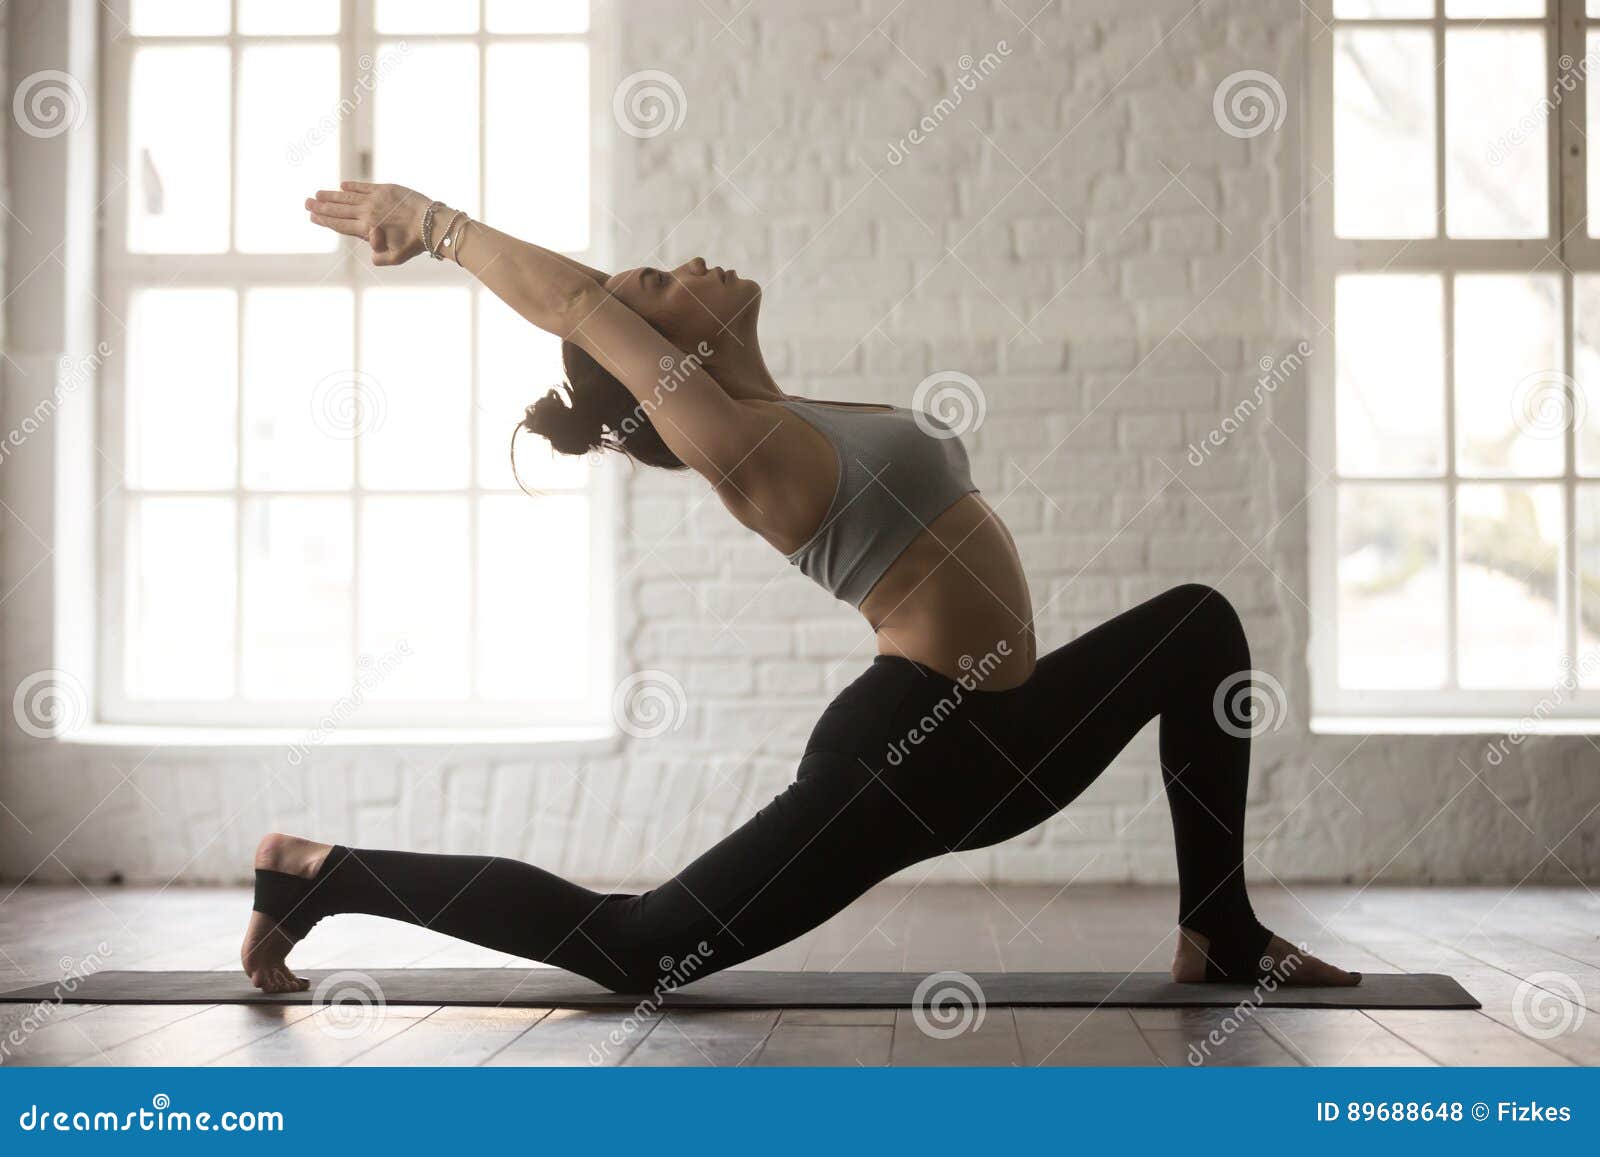 Mountain Pose (Tadasana) - Yoga Pose